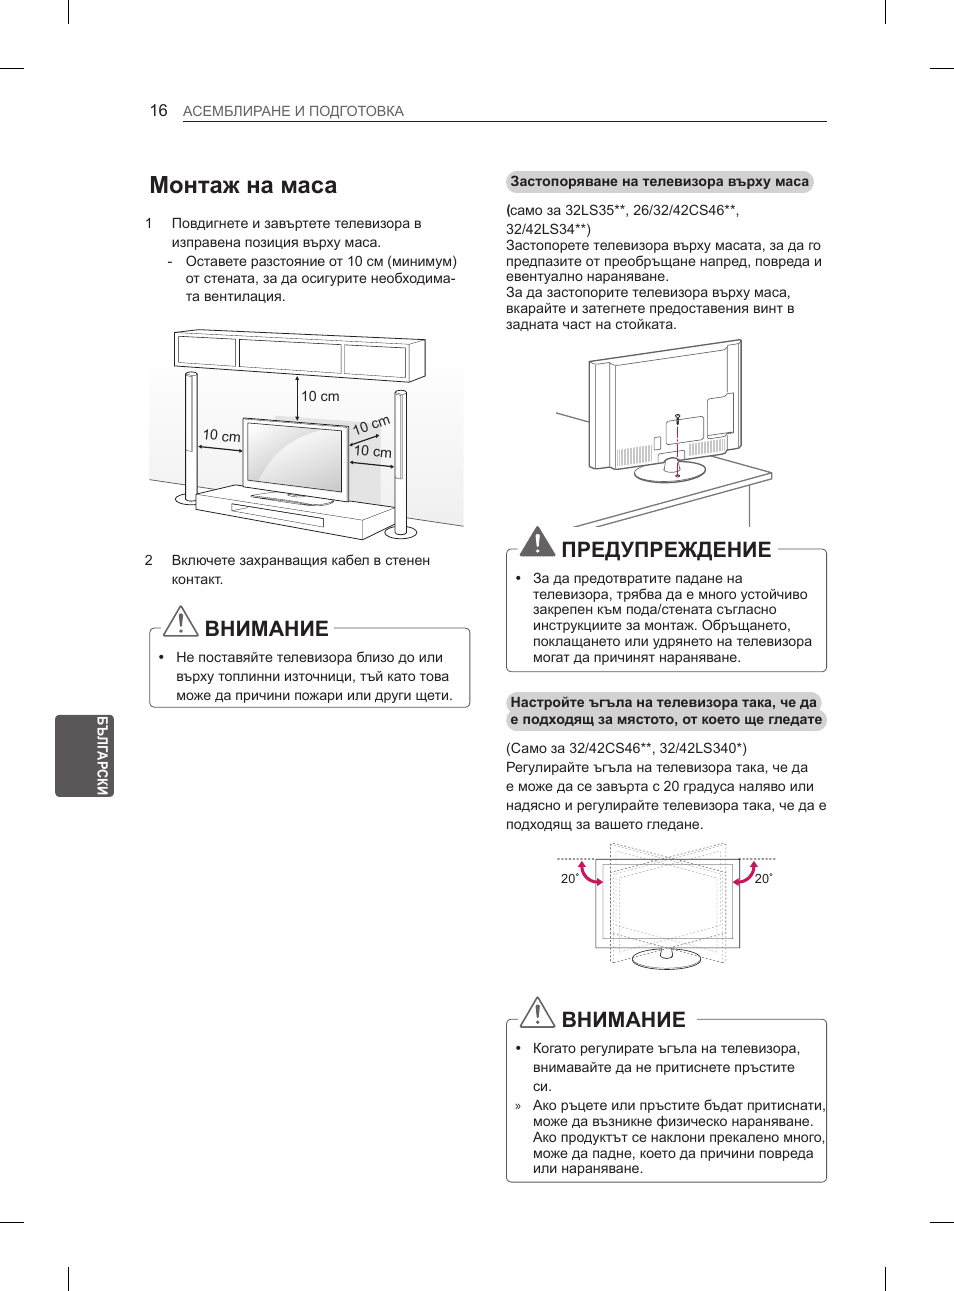 Монтаж на маса, Внимание, Предупреждение | LG 42LS3400 User Manual | Page 156 / 397